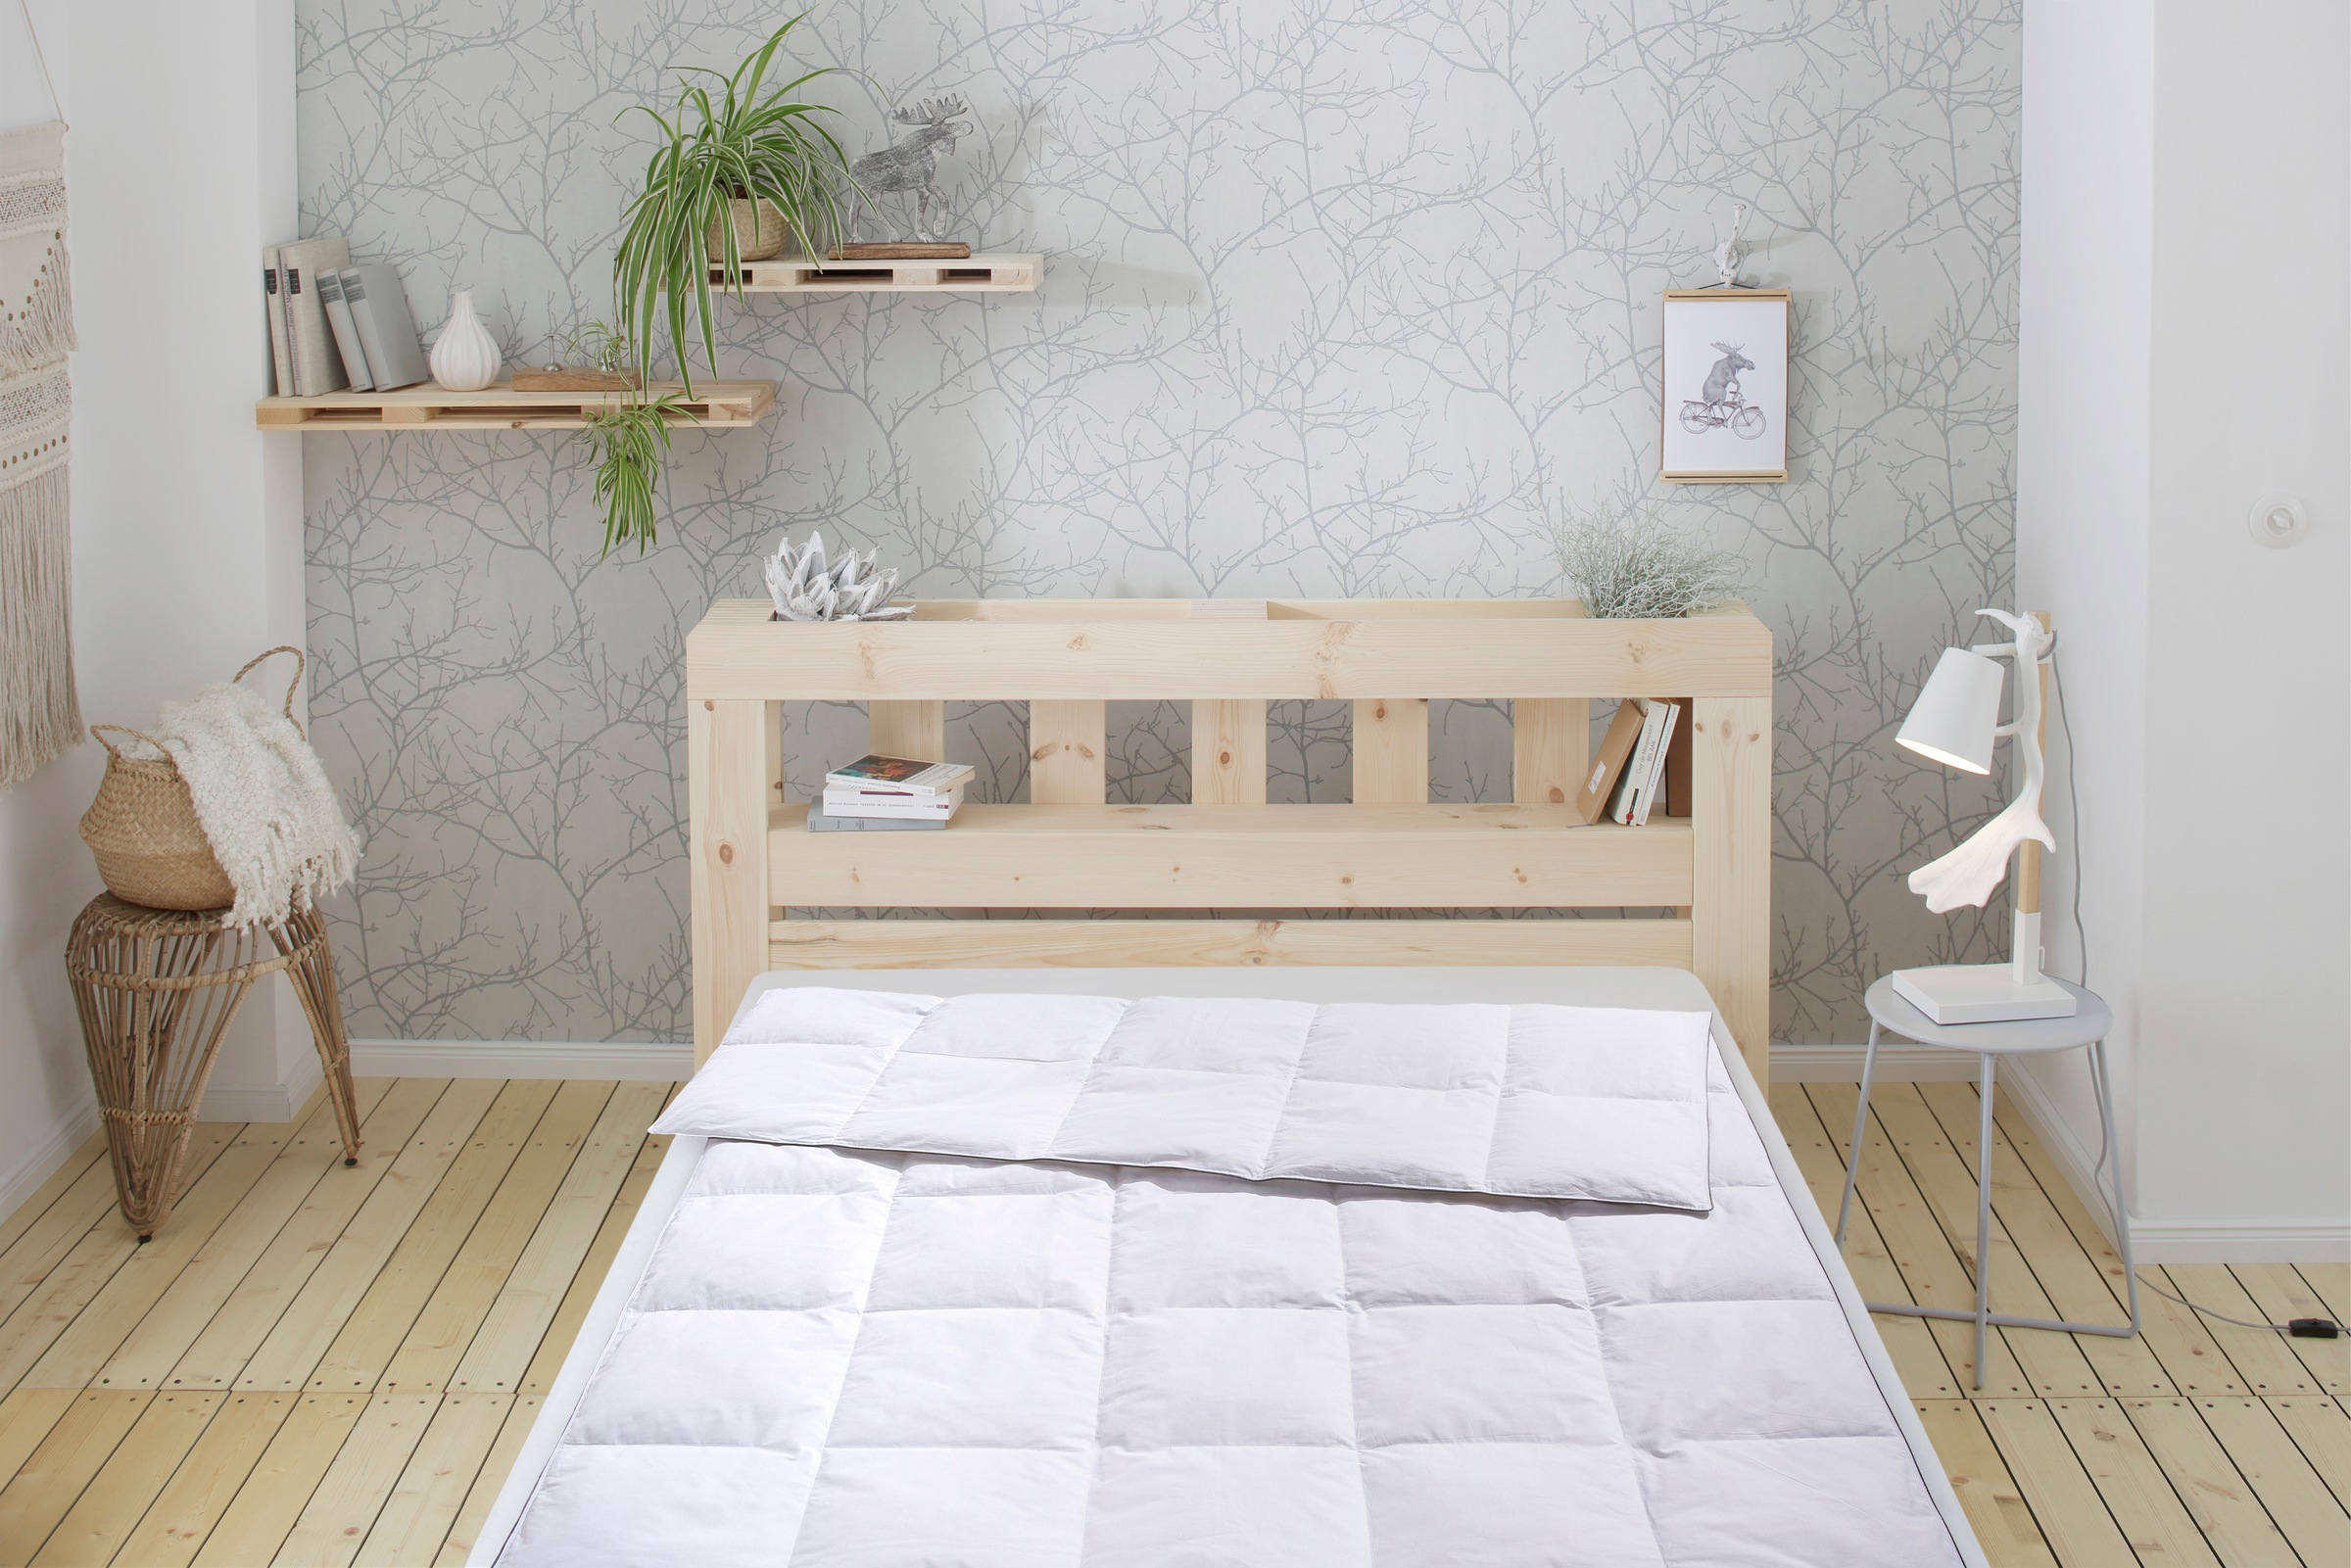 Älgdröm Daunenbettdecke »Finja, Bettdecke 135x200 cm, weitere Größen, Made günstig online kaufen